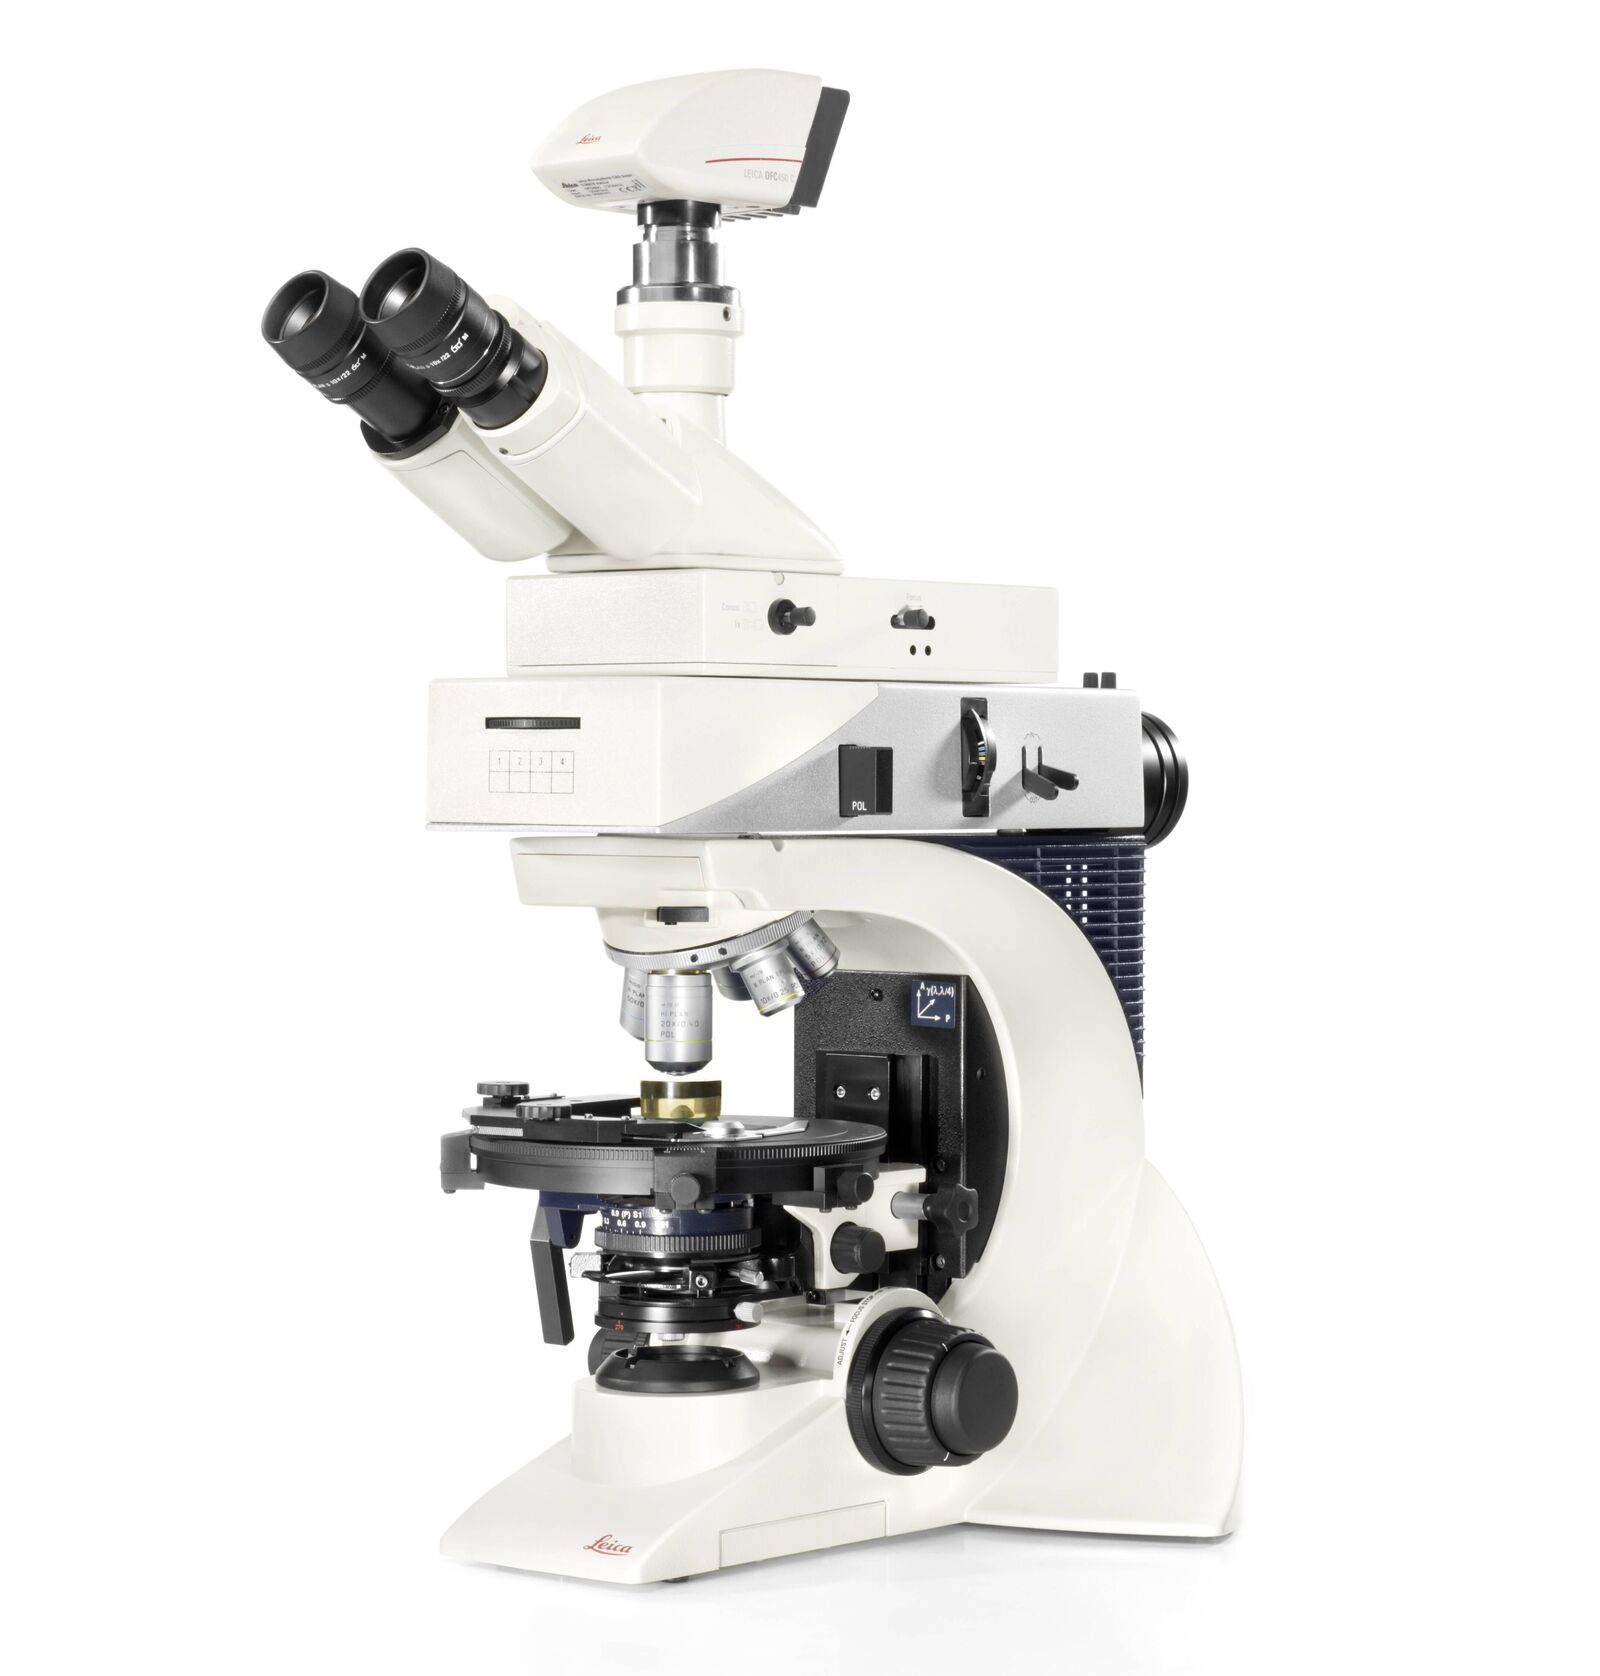 Accessoires pour microscope DM750, LEICA® - Materiel pour Laboratoire